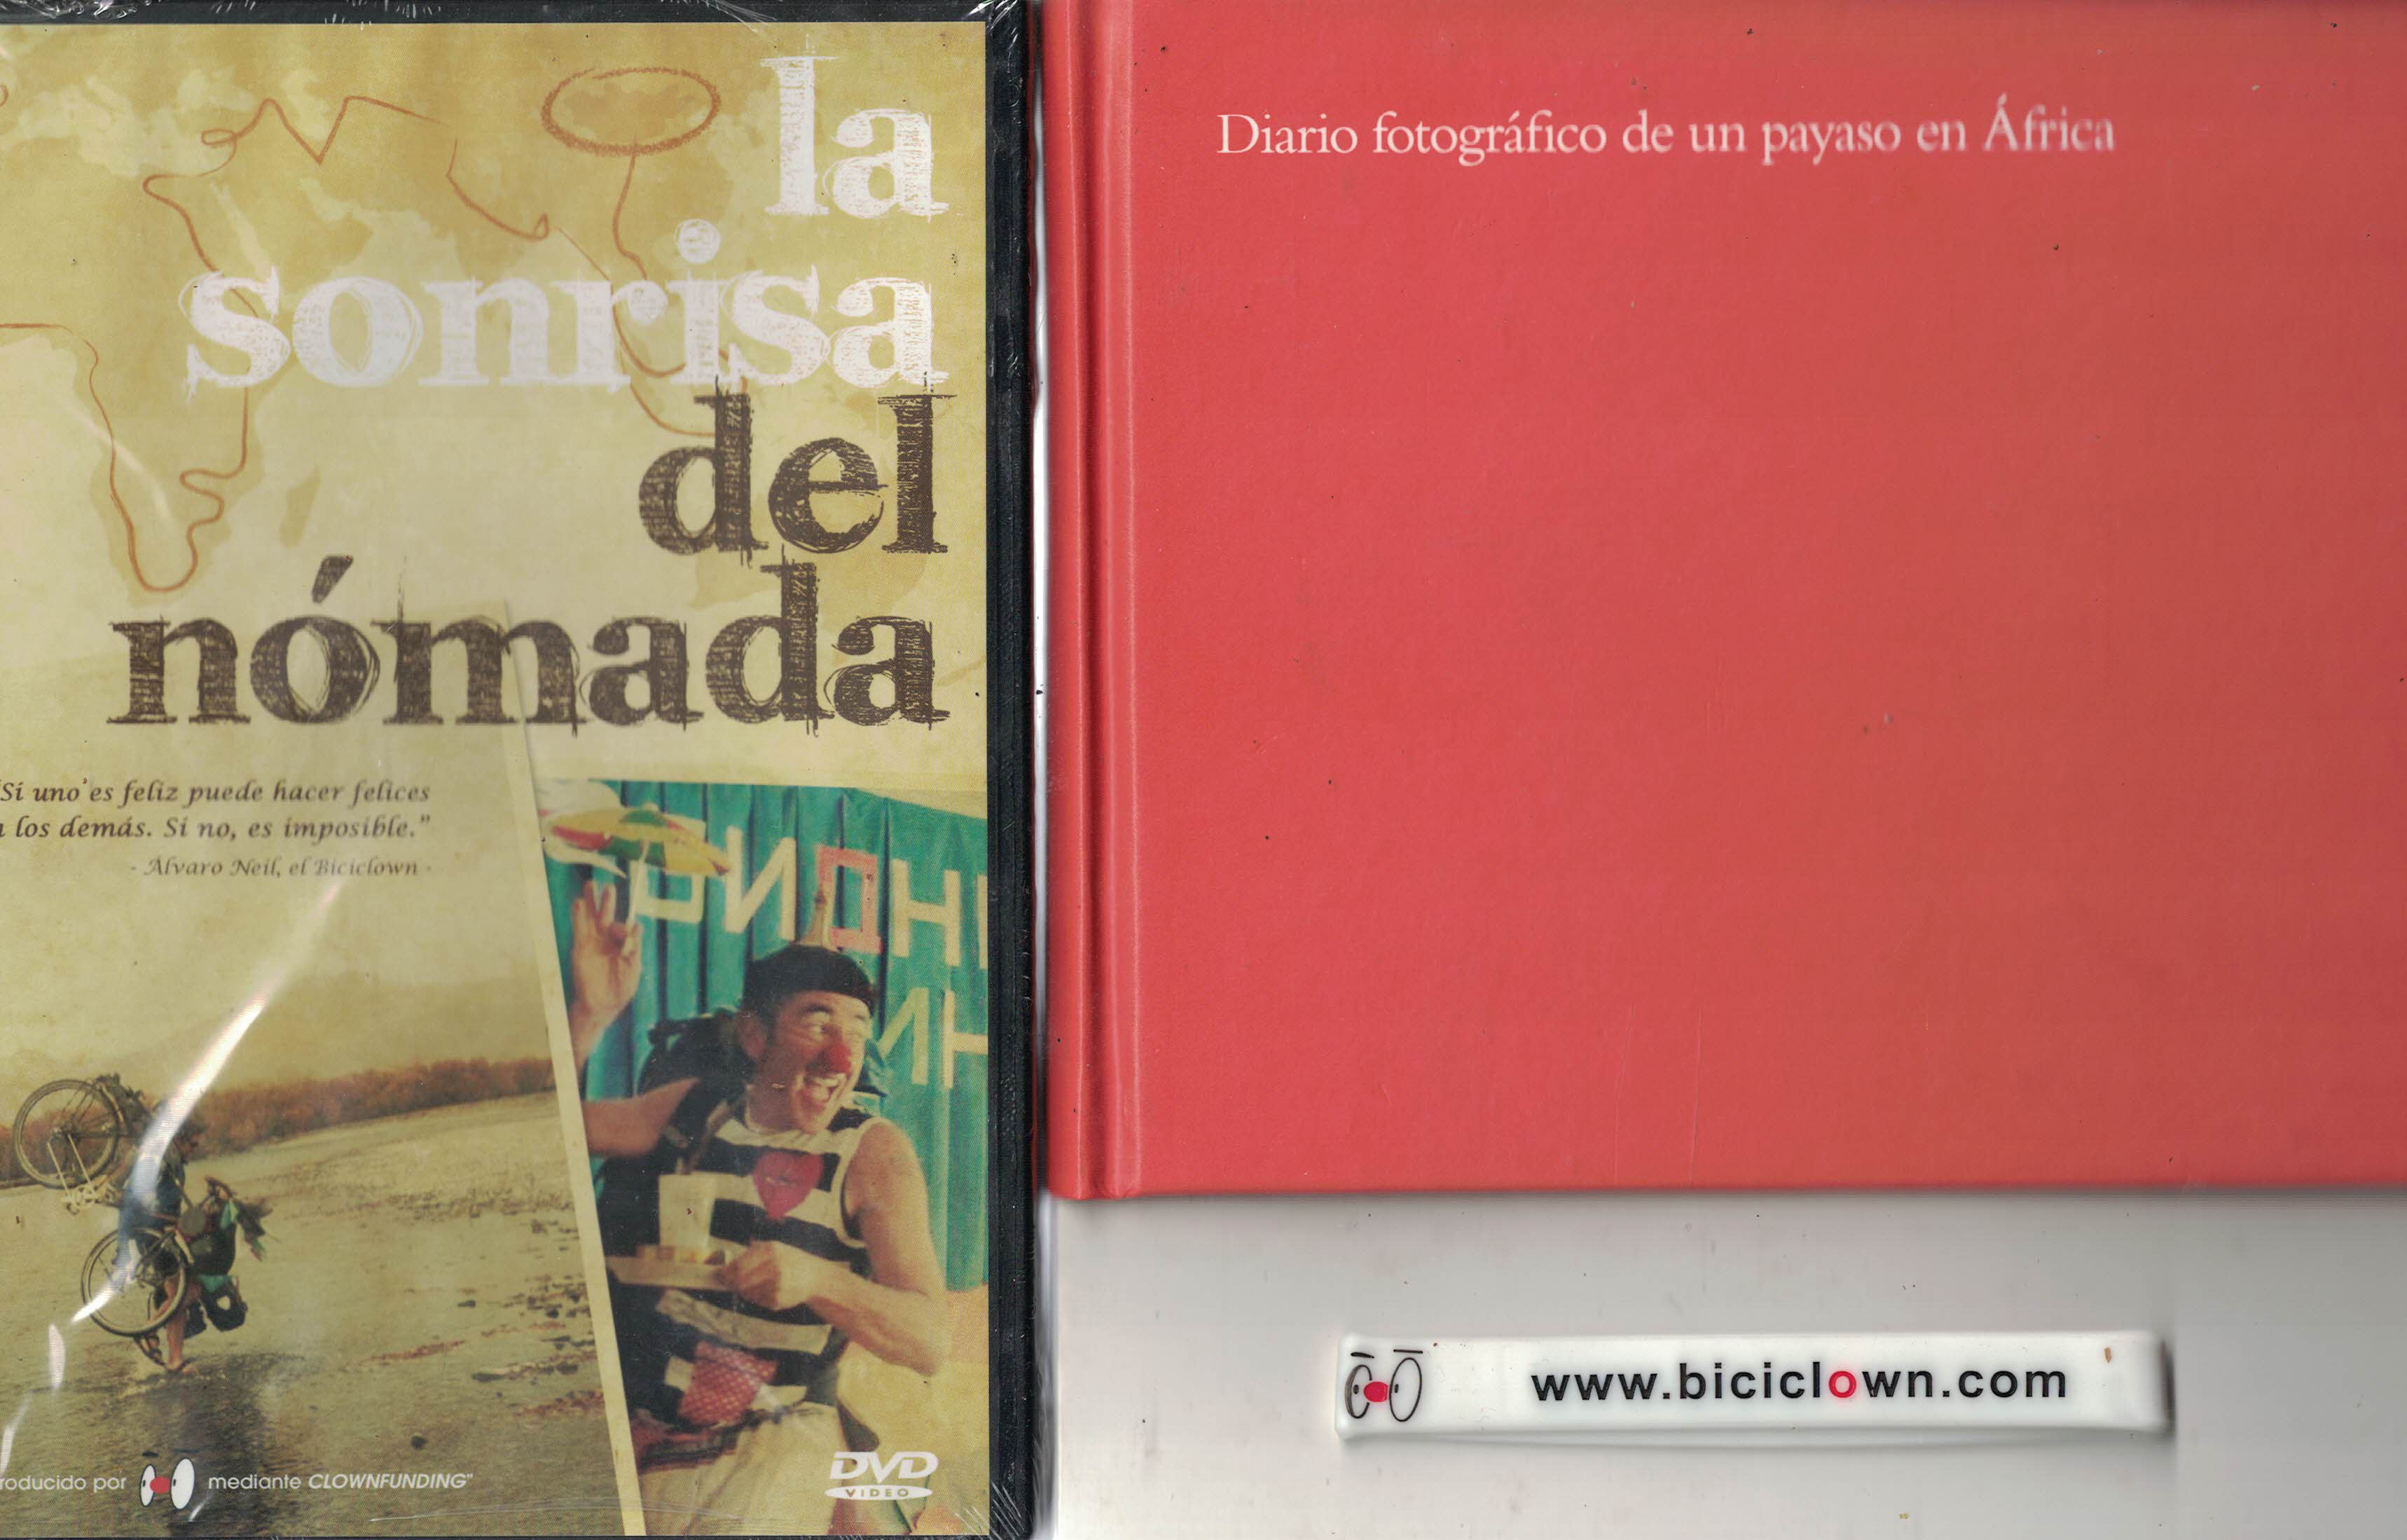 Promoción: Diario fotográfico de un payaso en África + La sonrisa del nómada (DVD) + Pulsera Vuelta al Mundo Biciclown (BIC456)